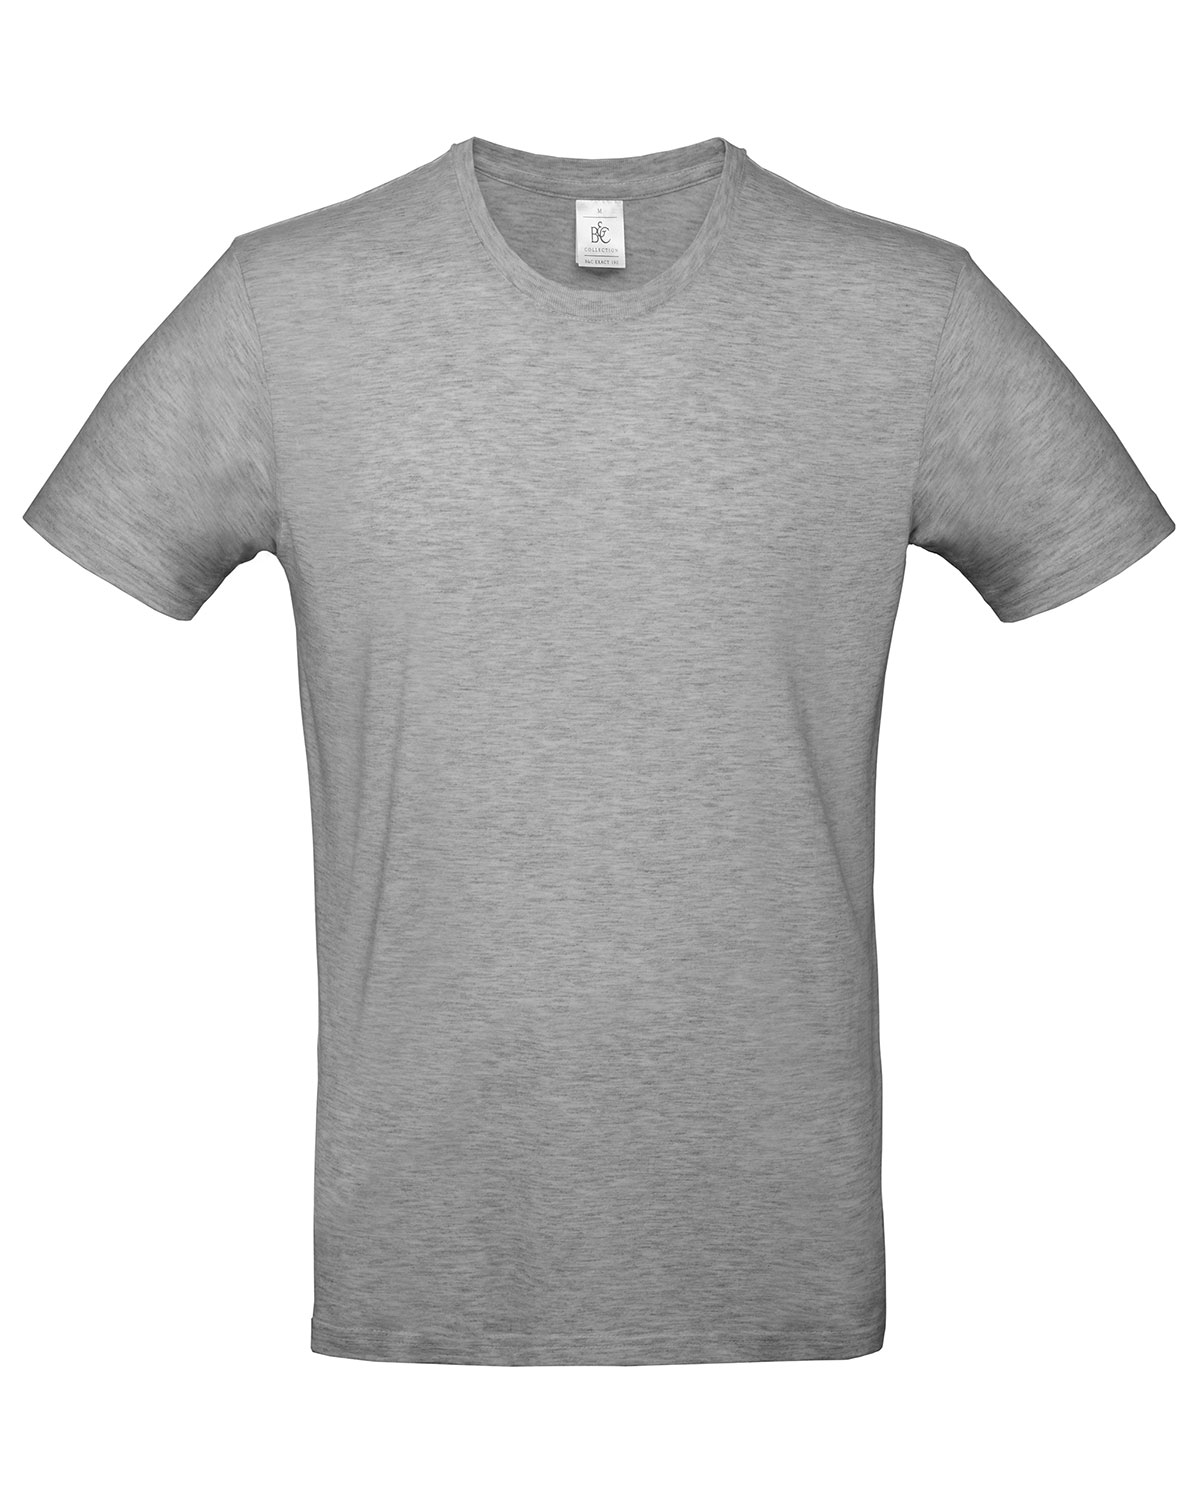 T-Shirt #E190 Sport Grey (Heather) 5XL